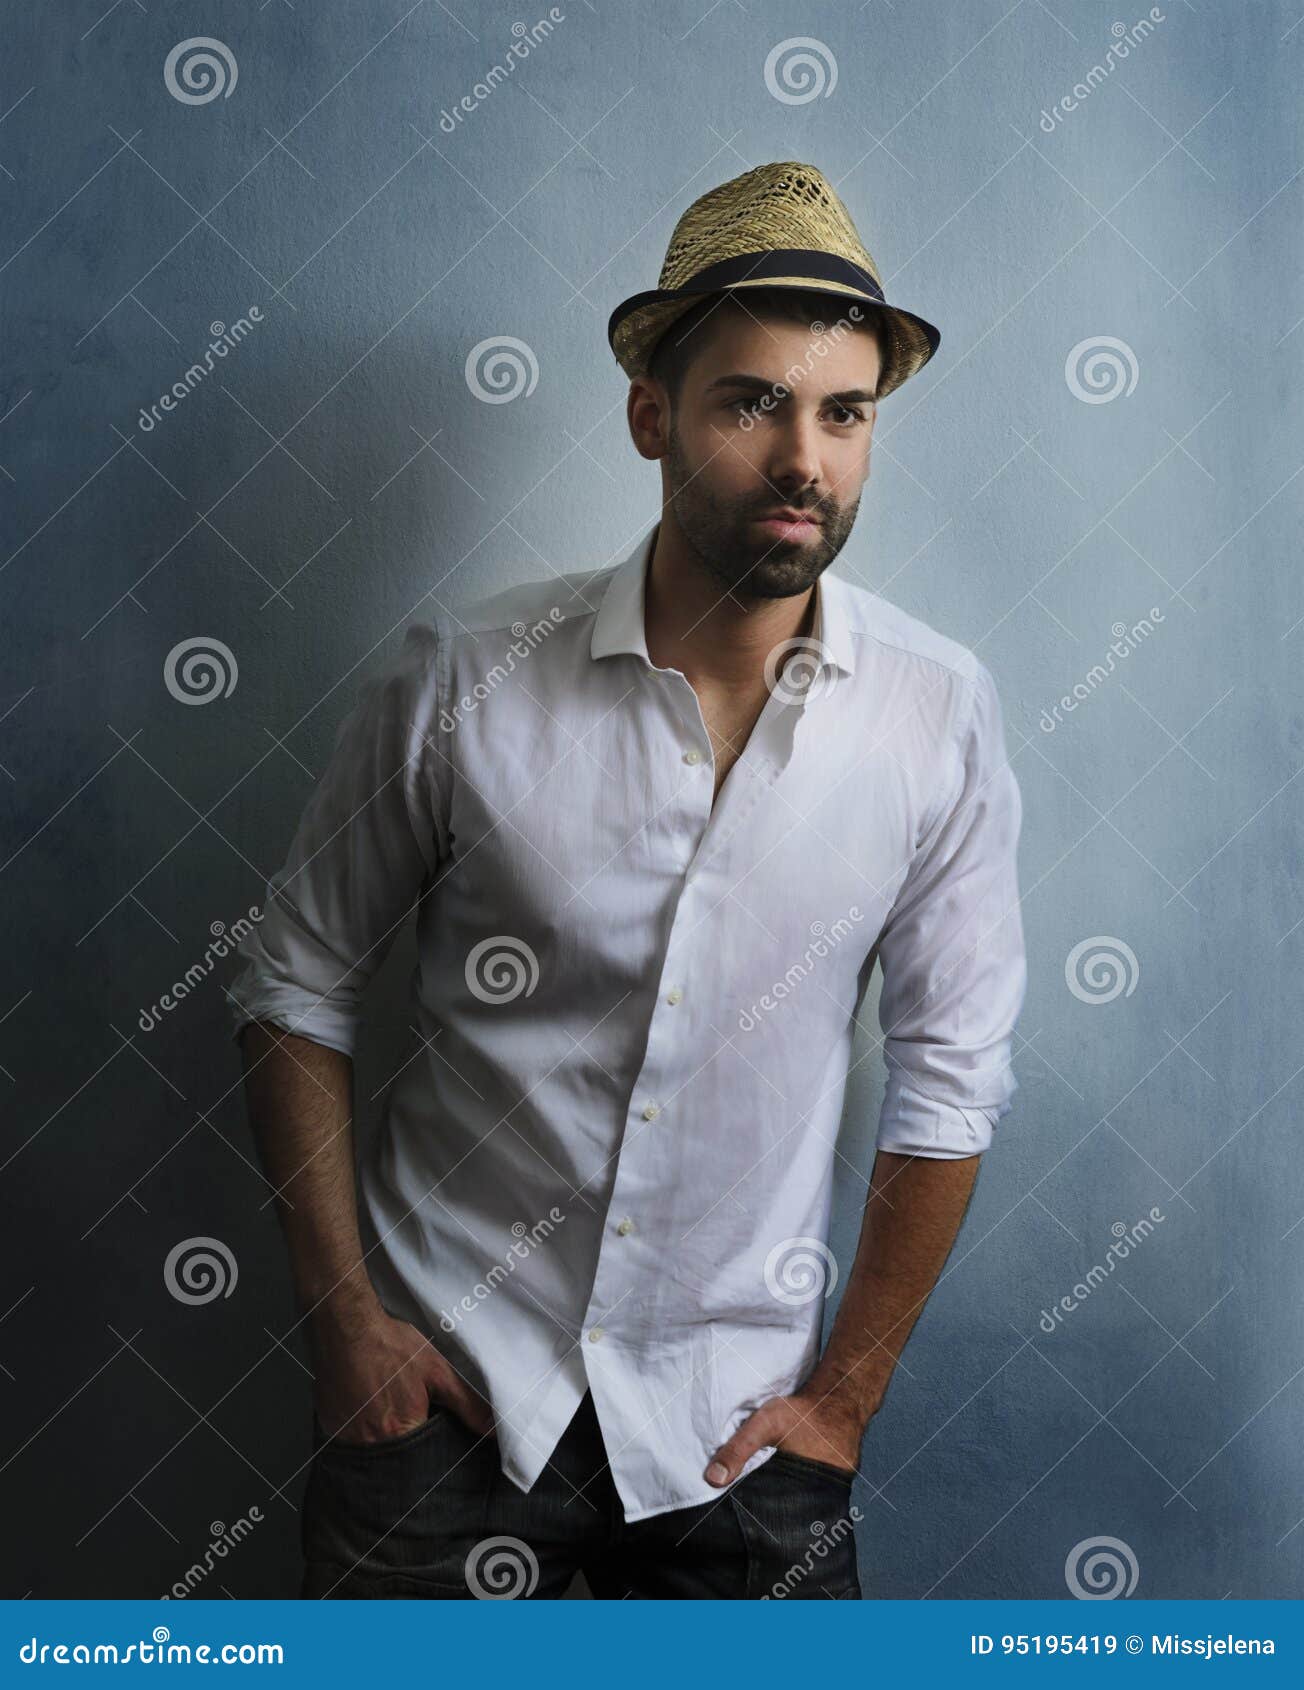 Stylish man with retro hat stock image. Image of beard - 95195419